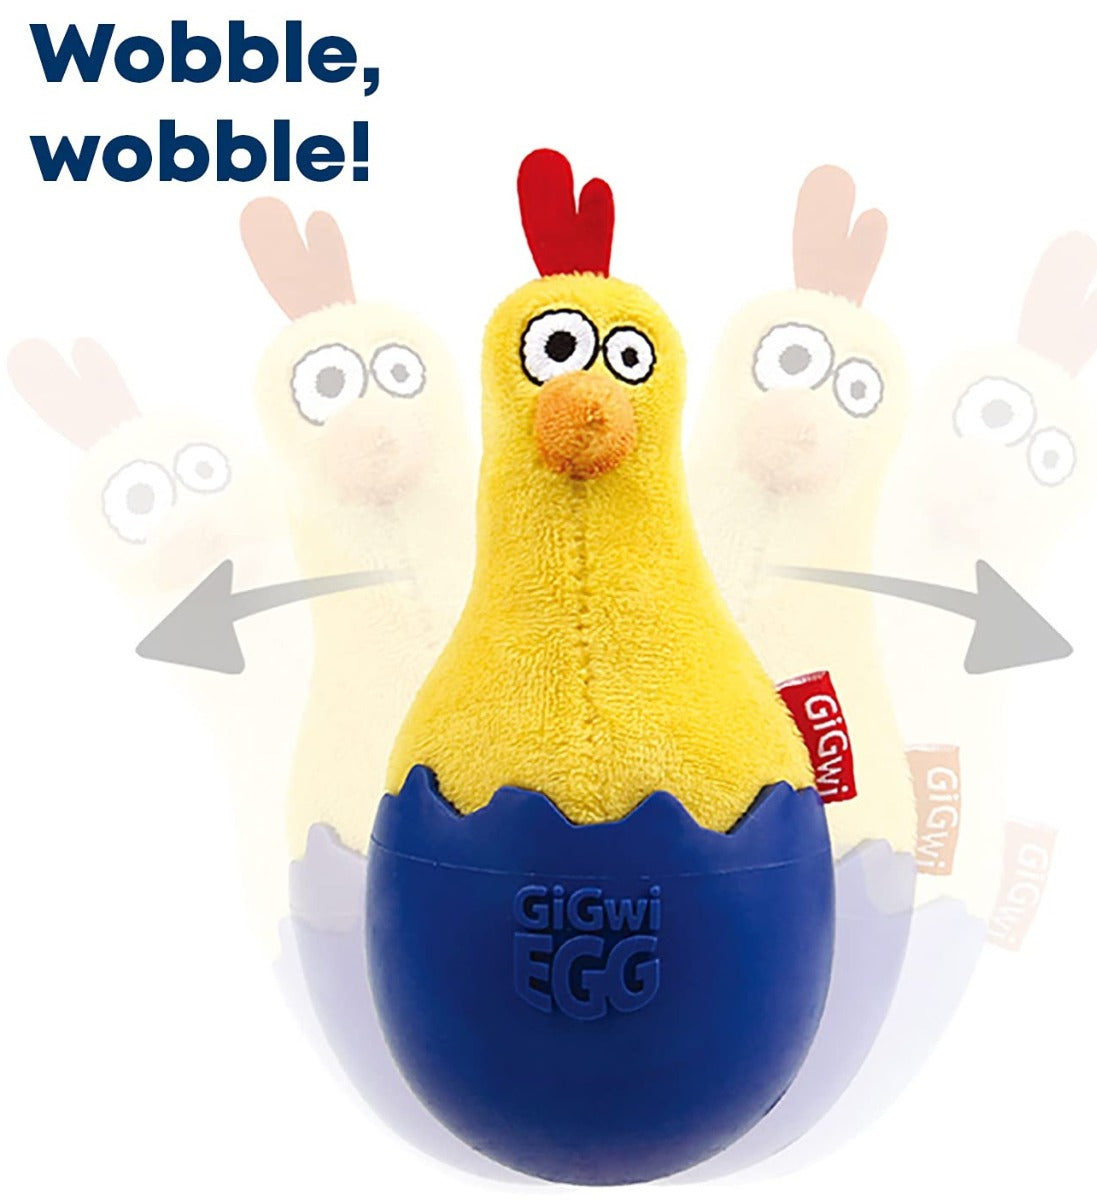 Gigwi Egg Wobble Fun Brown Duck Plush/TPR Dog Toy - Yellow